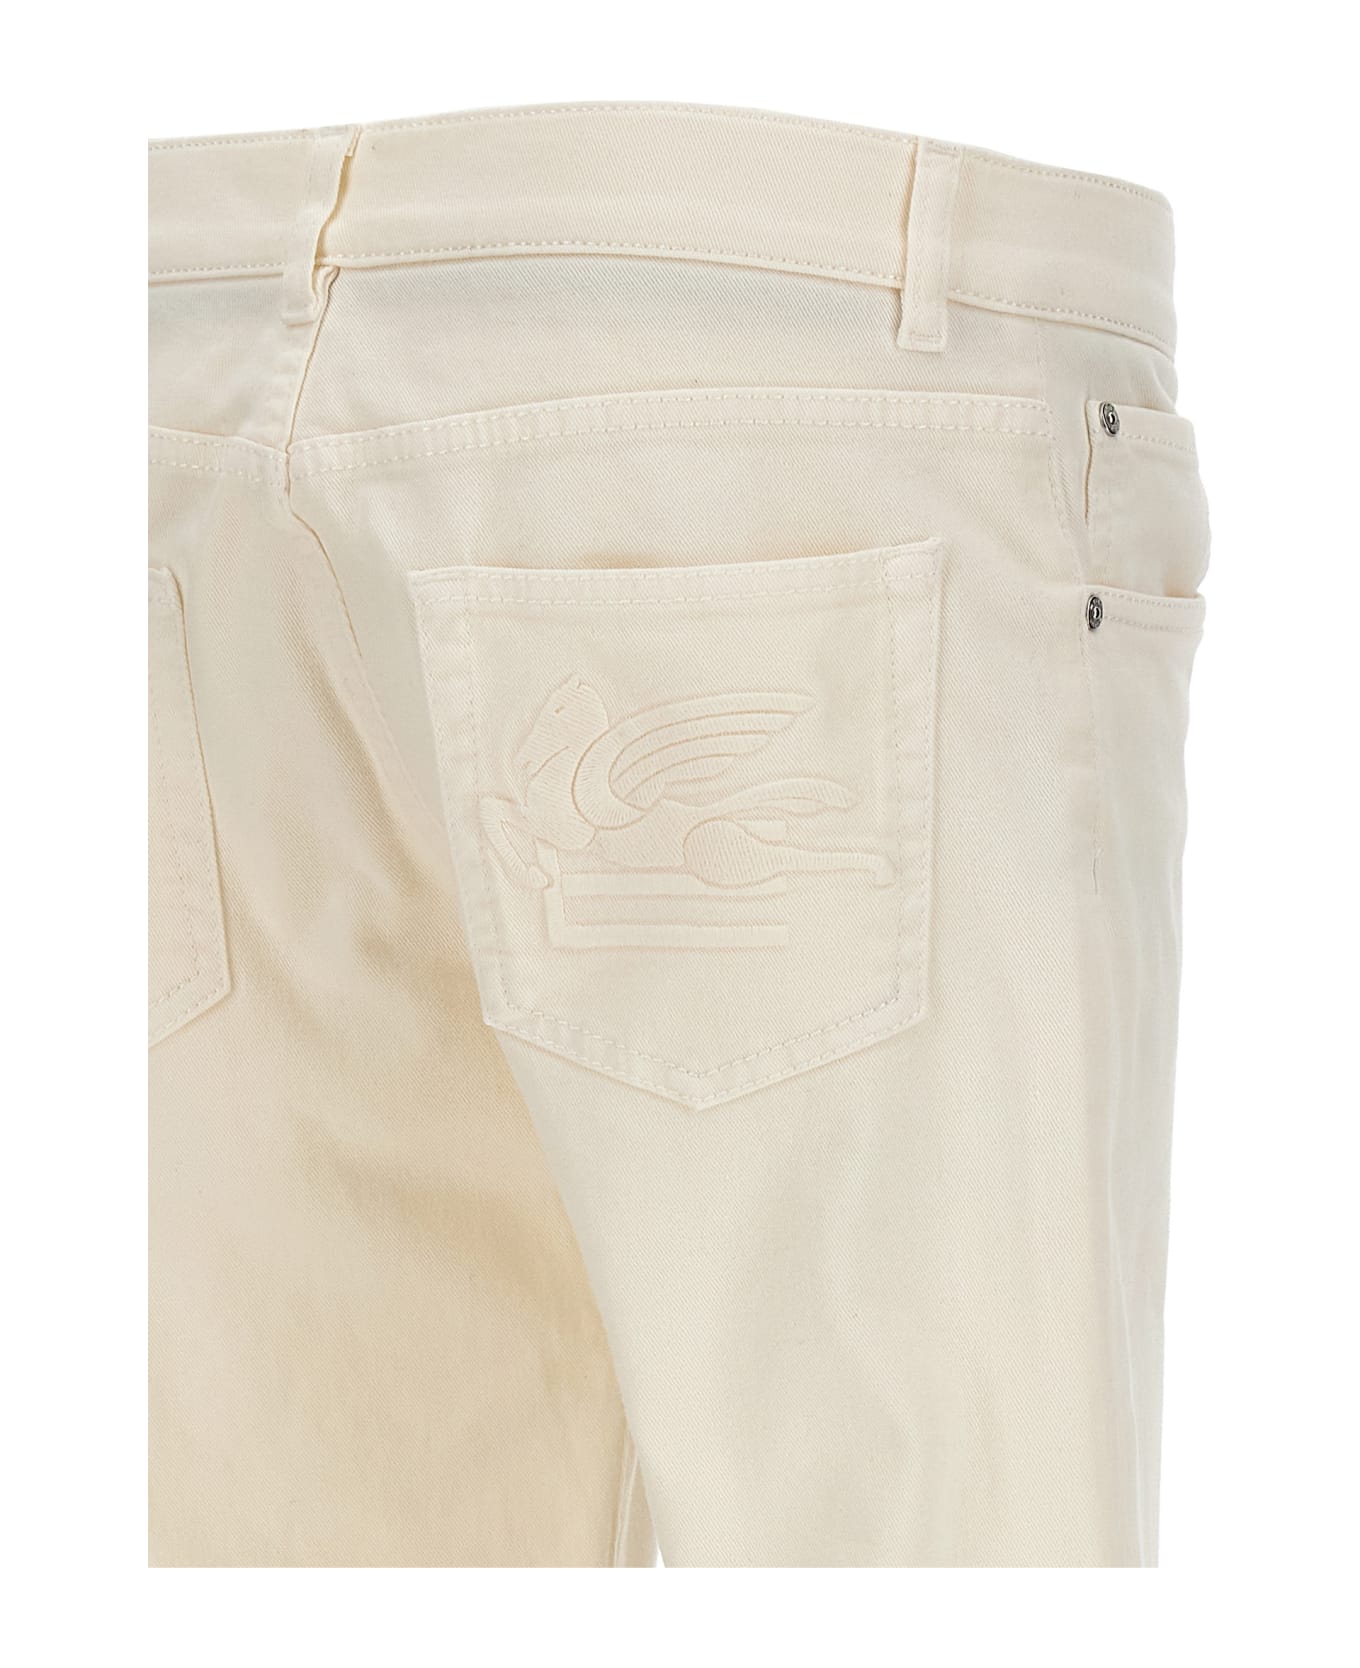 Etro Tone-on-tone Logo Jeans - White デニム